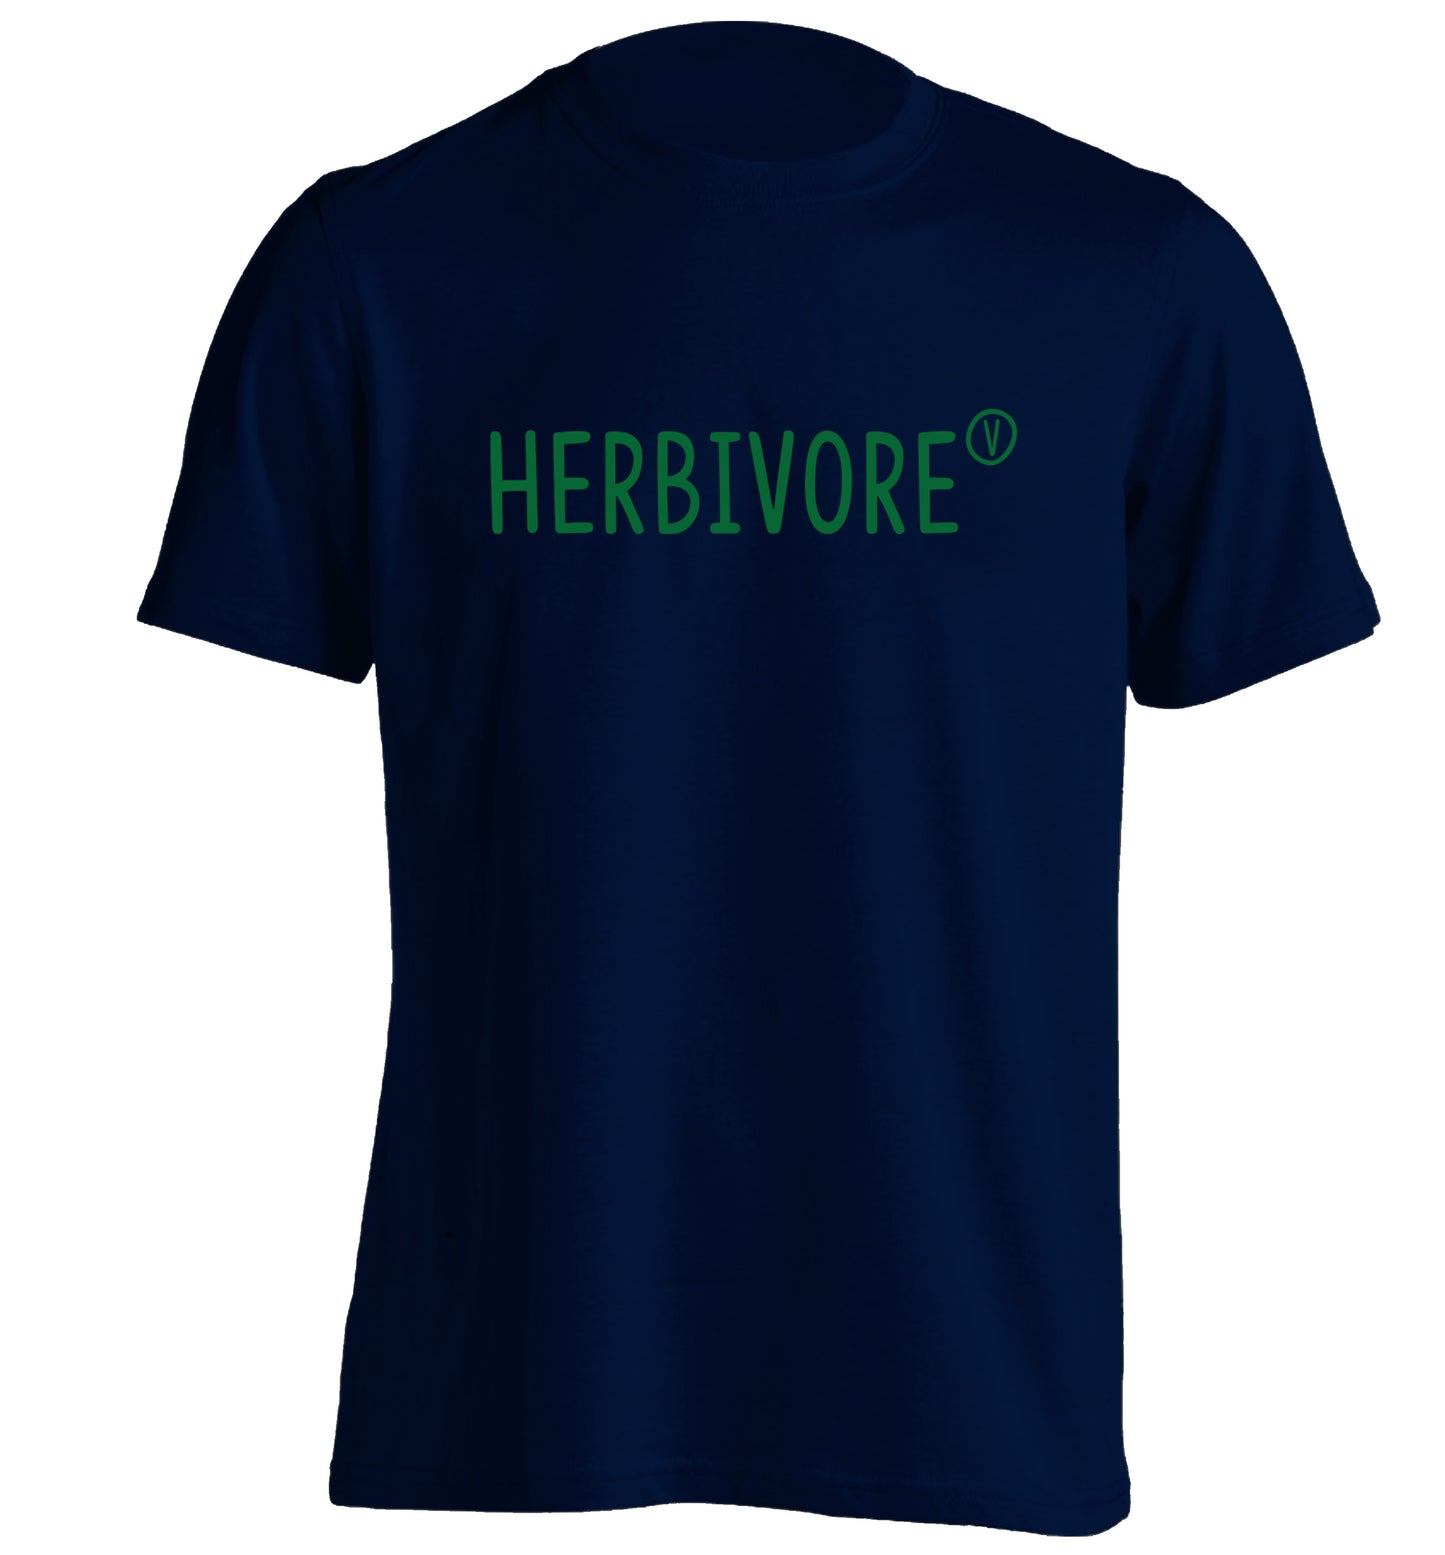 Herbivore adults unisex navy Tshirt 2XL